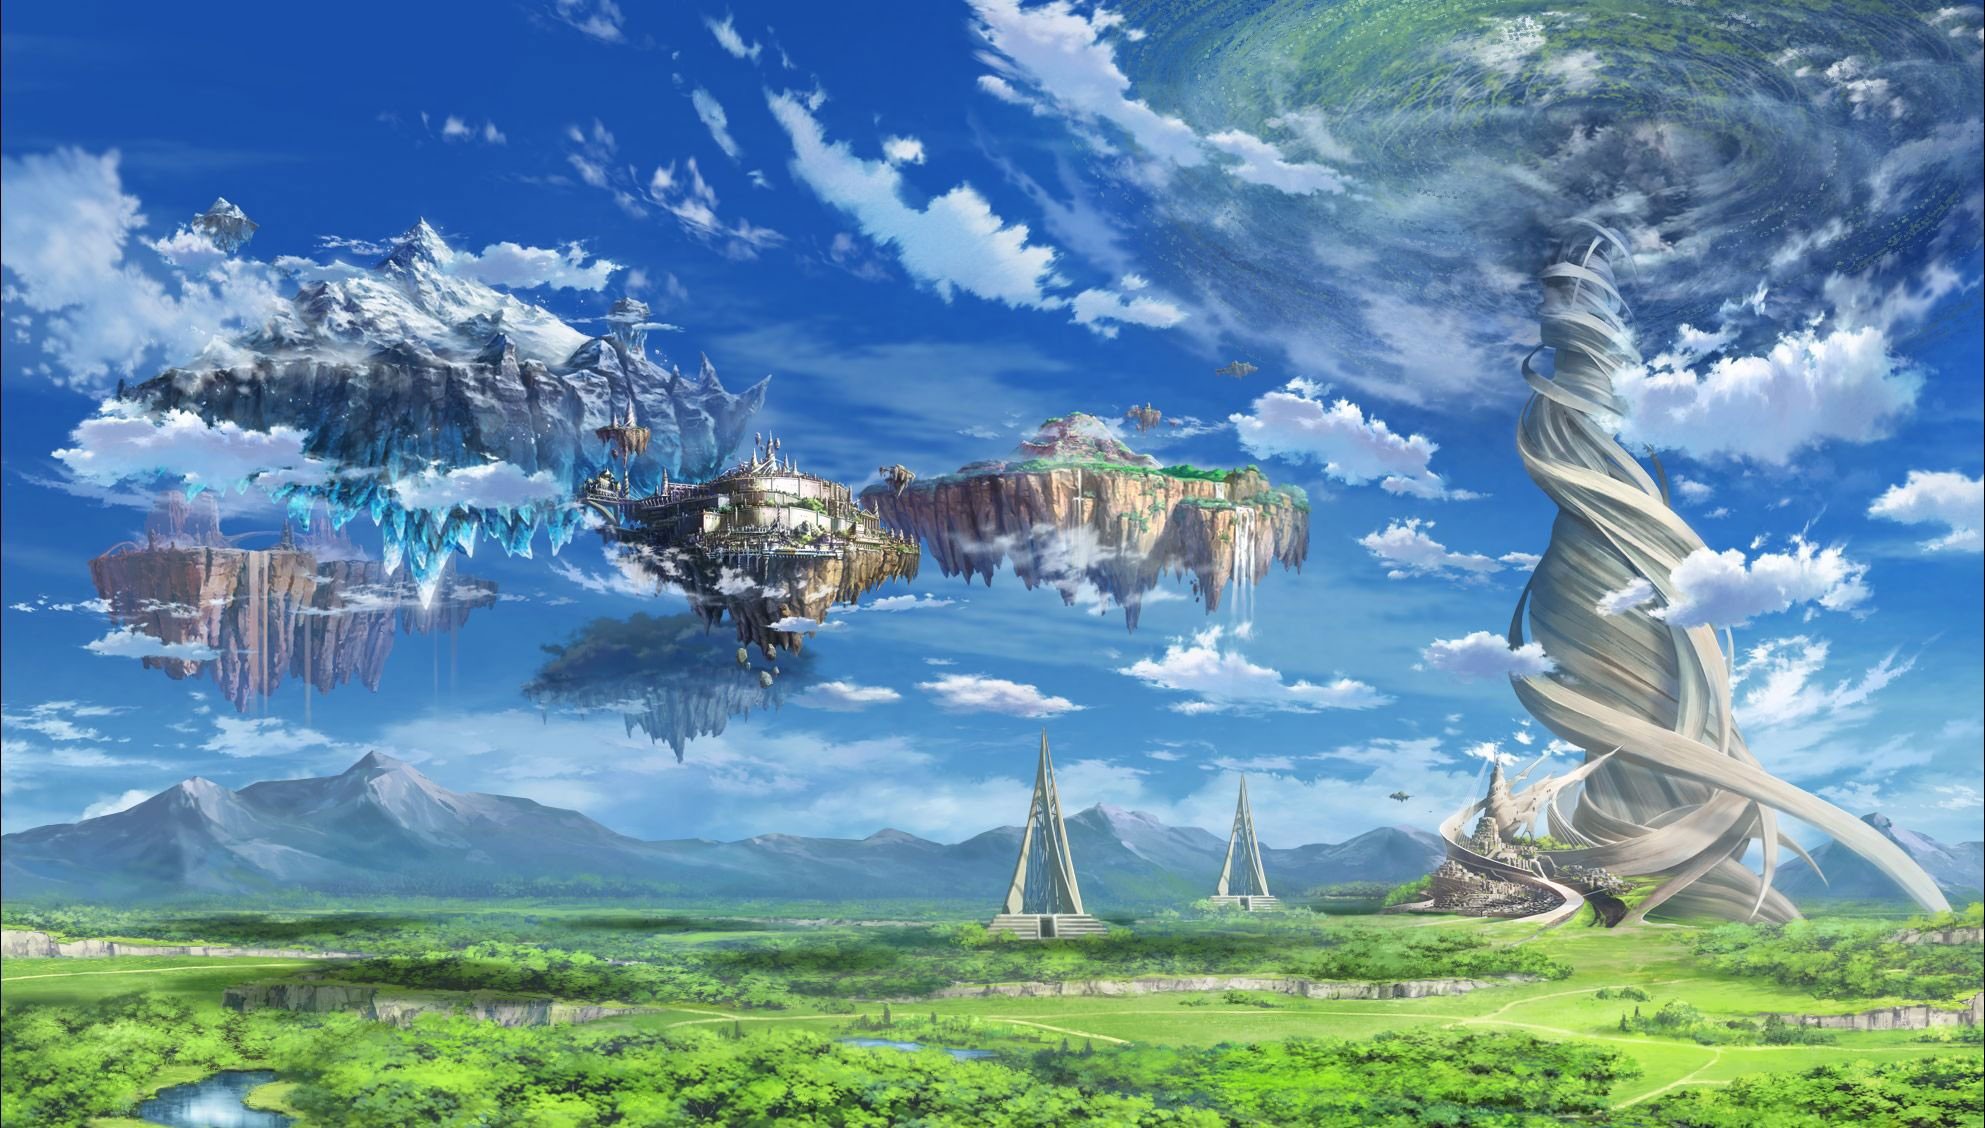 Hình ảnh Anime phong cảnh hiếm đẹp như mơ